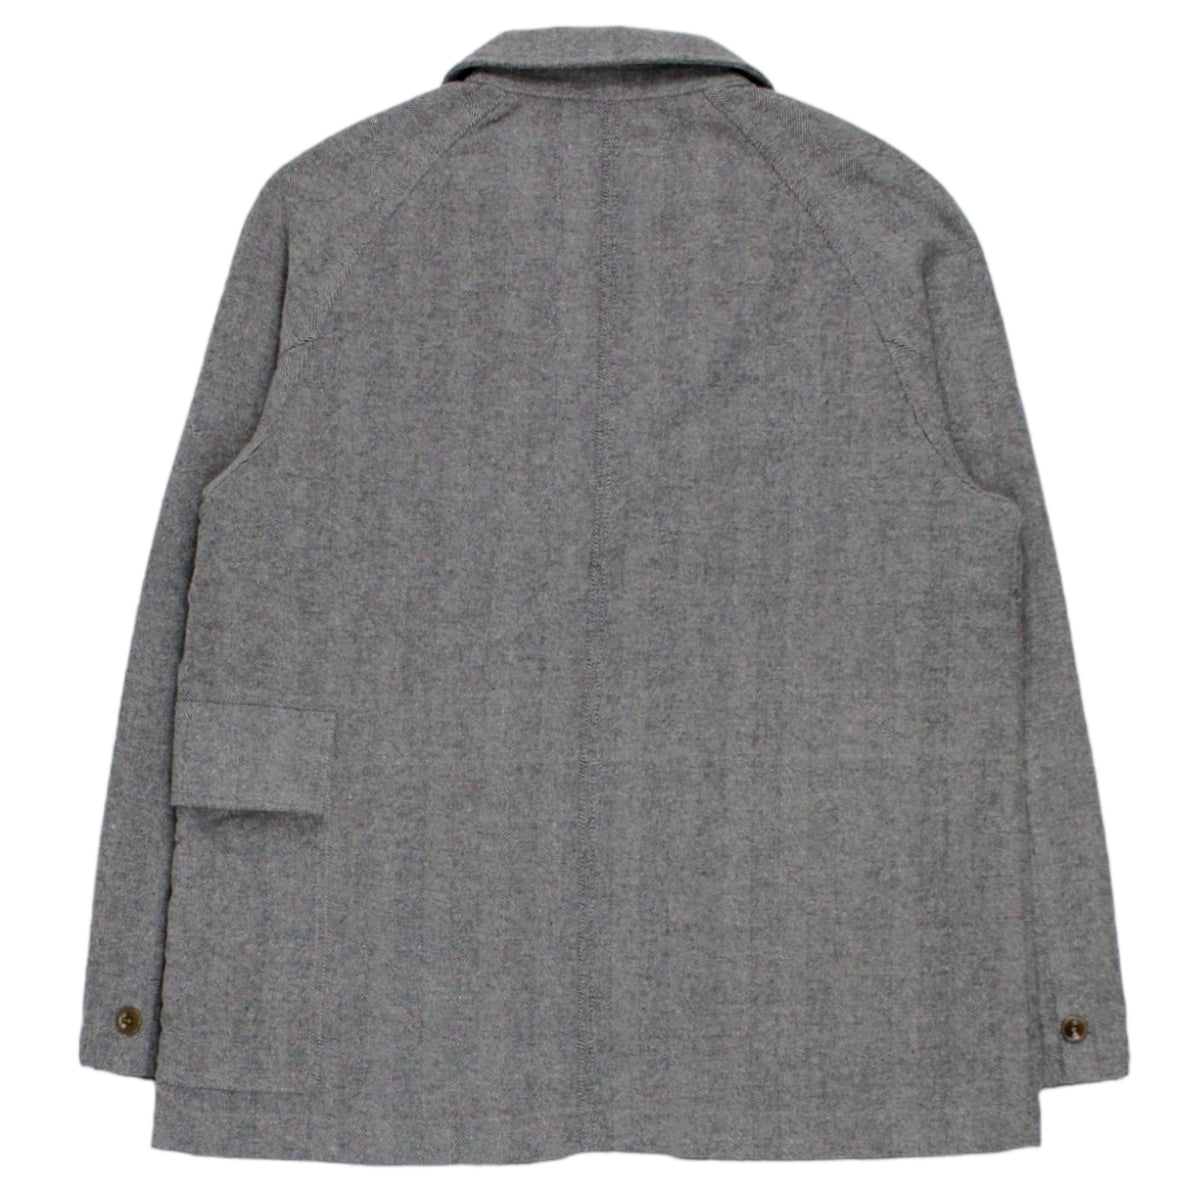 Garbstore Grey Herringbone Jacket - Sample